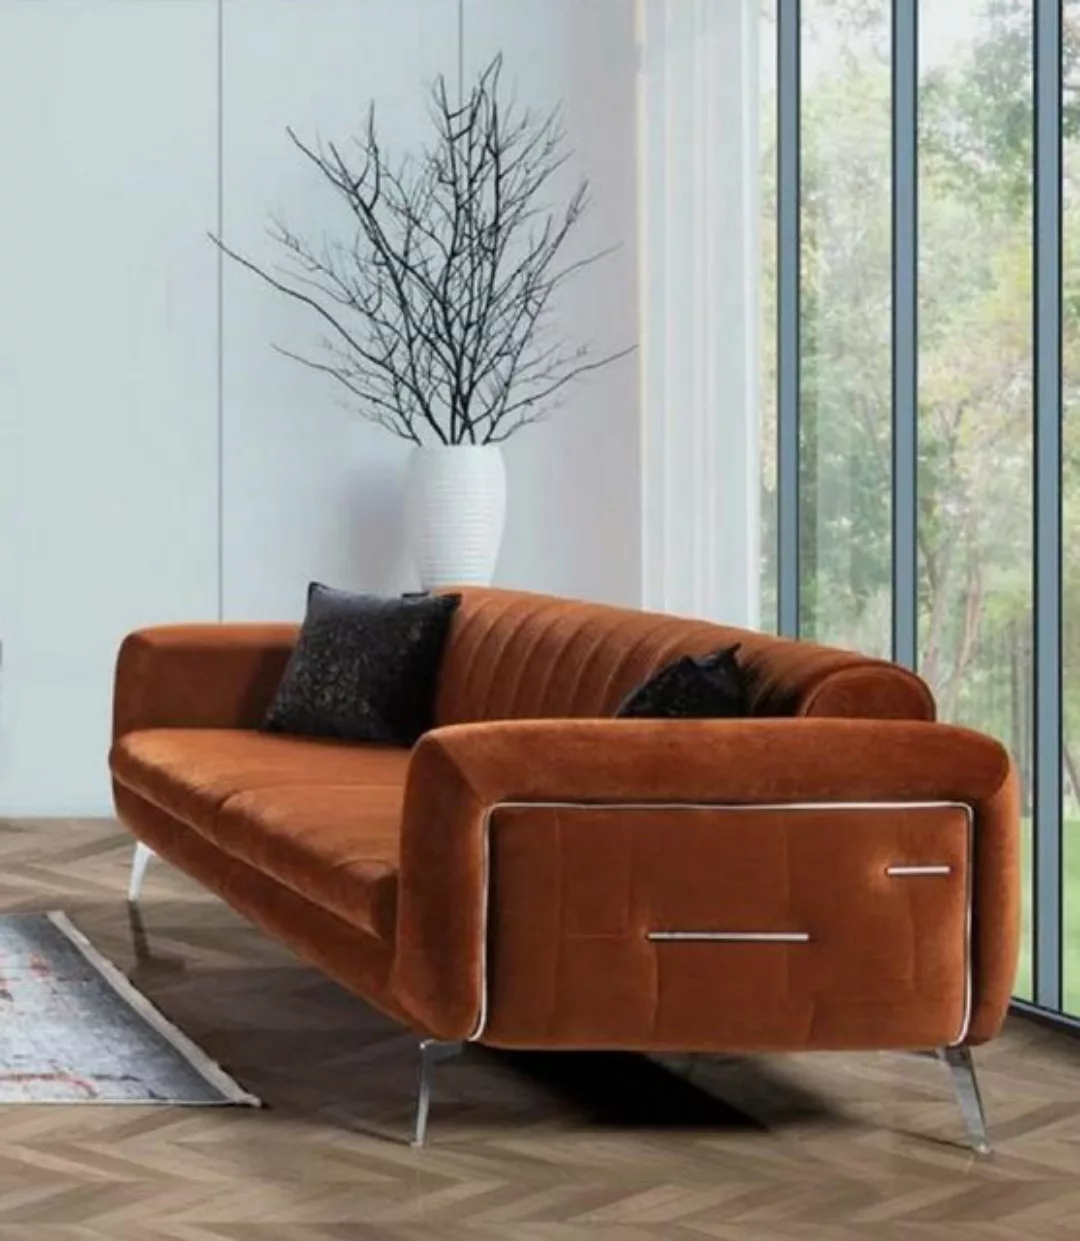 JVmoebel 3-Sitzer Braun Sofa Polster Dreisitzer Couchen Modern Design Neu günstig online kaufen